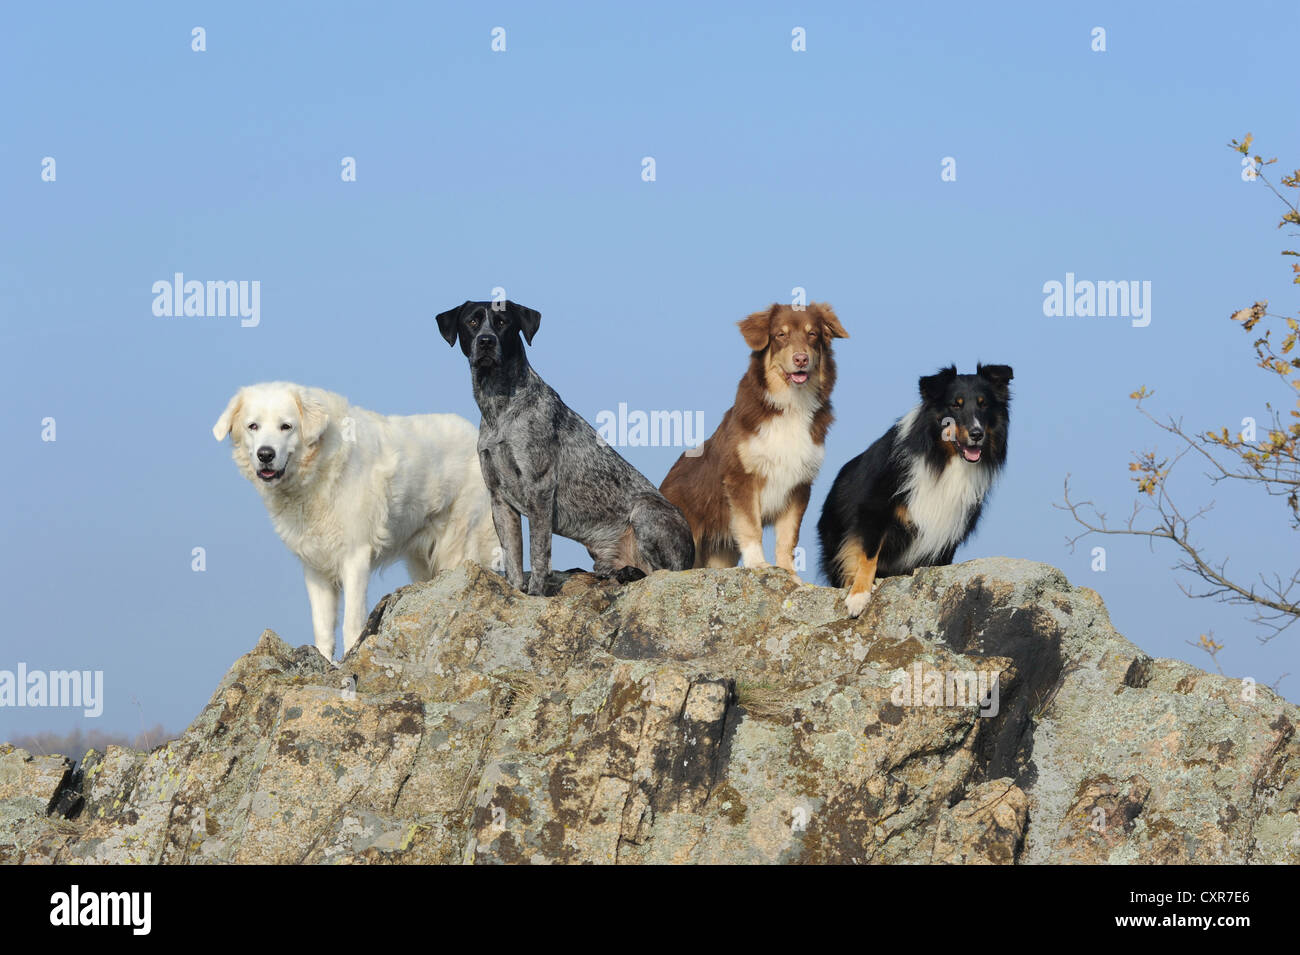 Slovensky Cuvac o Cuvac slovacco, Labrador Retriever - Miniature pinscher cross-razza Shetland Sheepdog o Sheltie e un Foto Stock